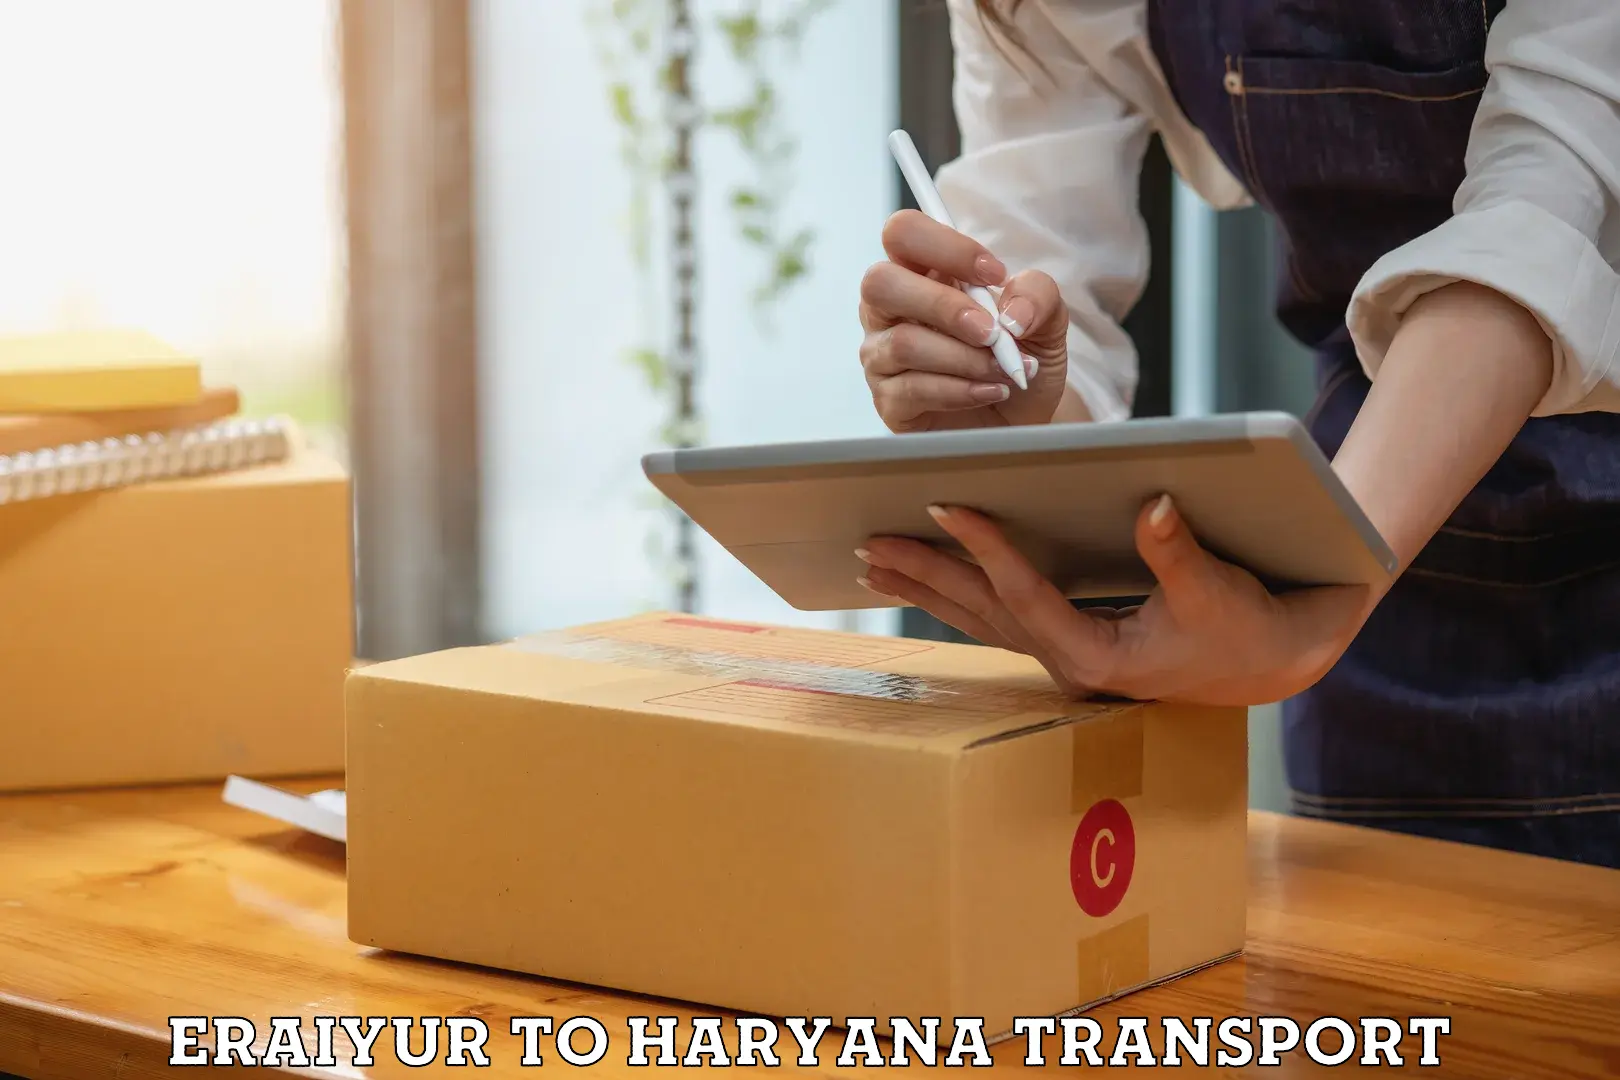 Furniture transport service Eraiyur to NCR Haryana